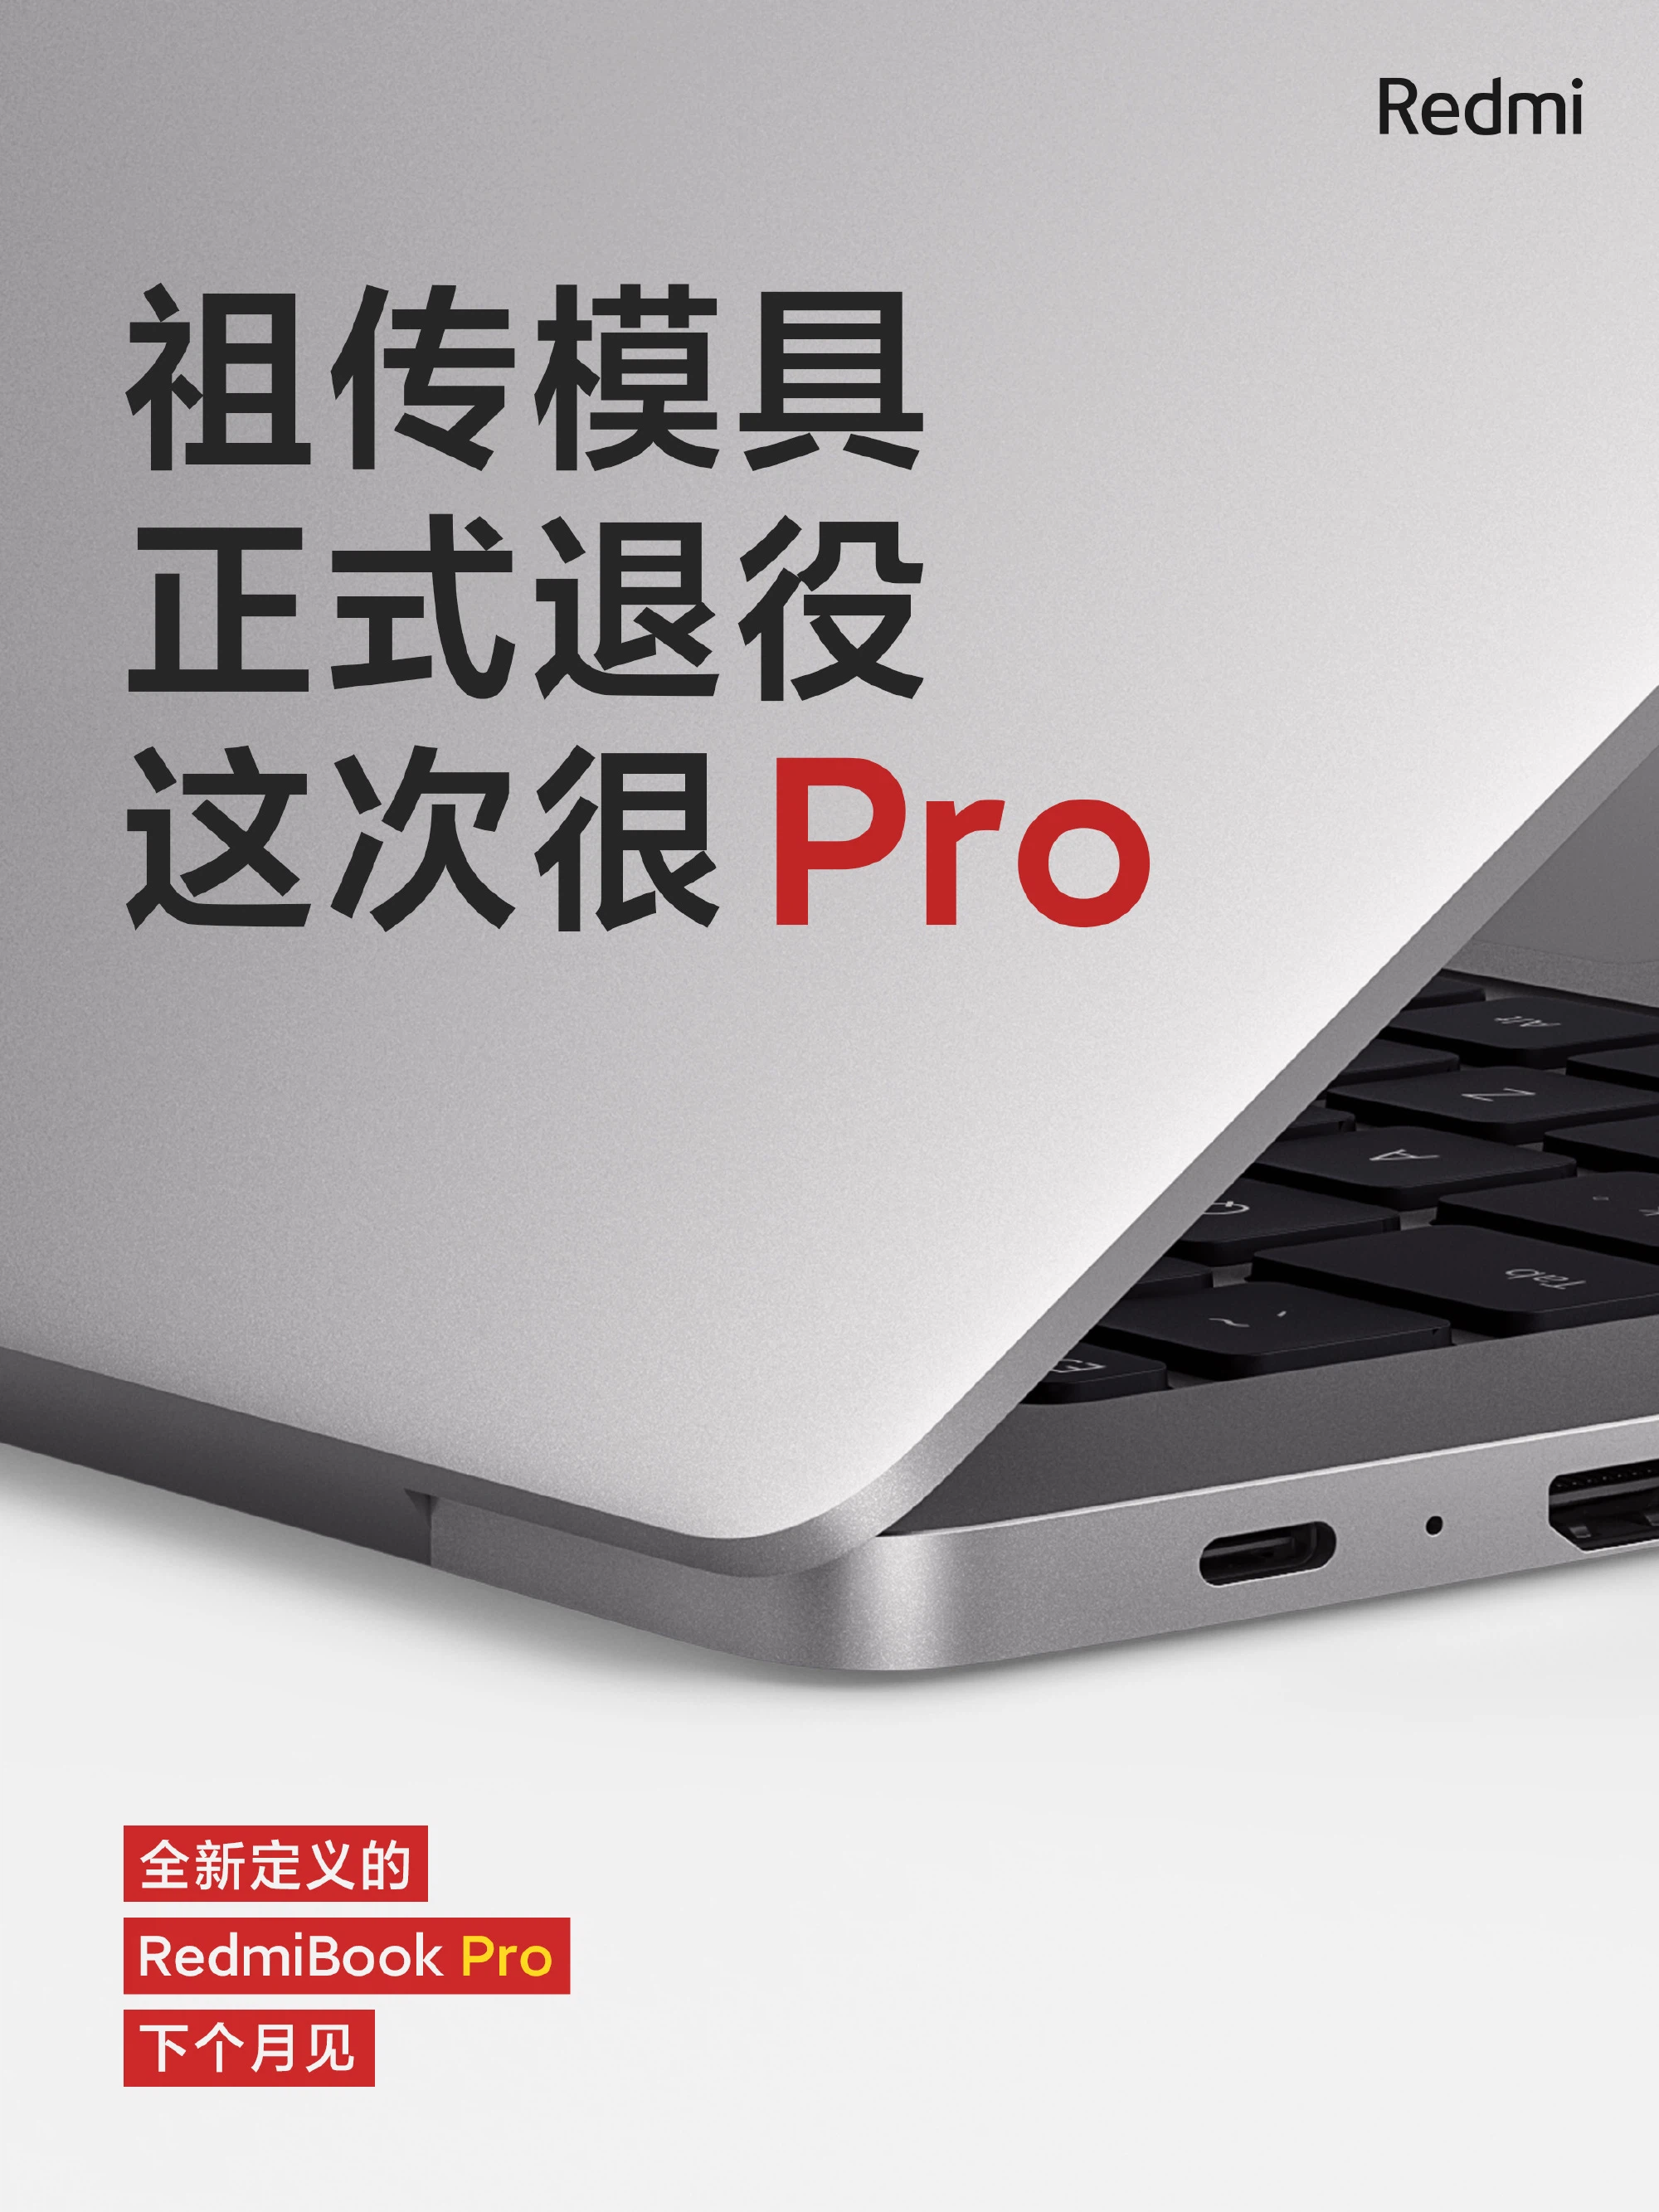 RedmiBook Pro: Thiết kế cao cấp, Intel thế hệ
11, Nvidia MX450, ra mắt ngày 25/2